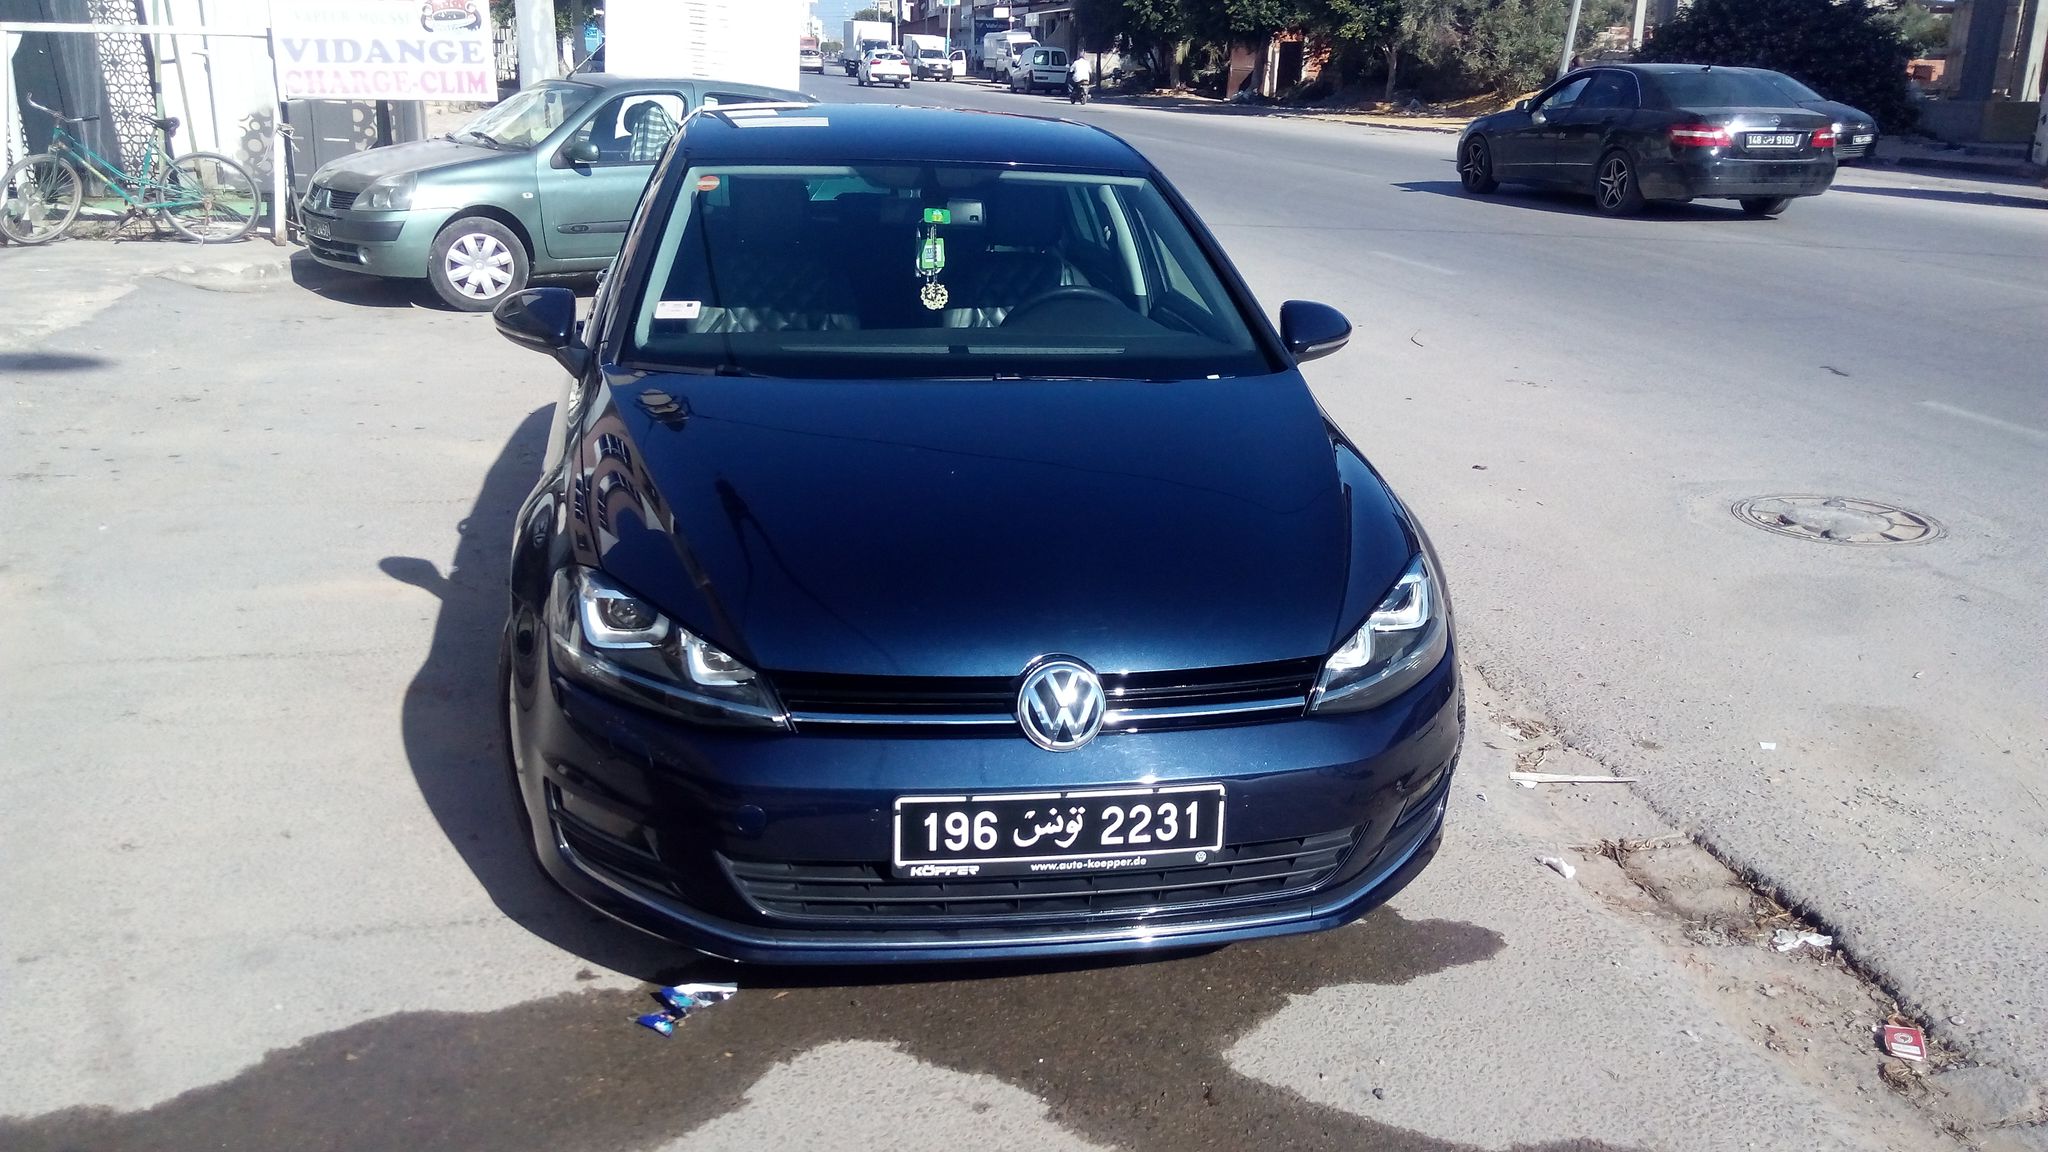 Volkswagen Golf 7 - Tunisie